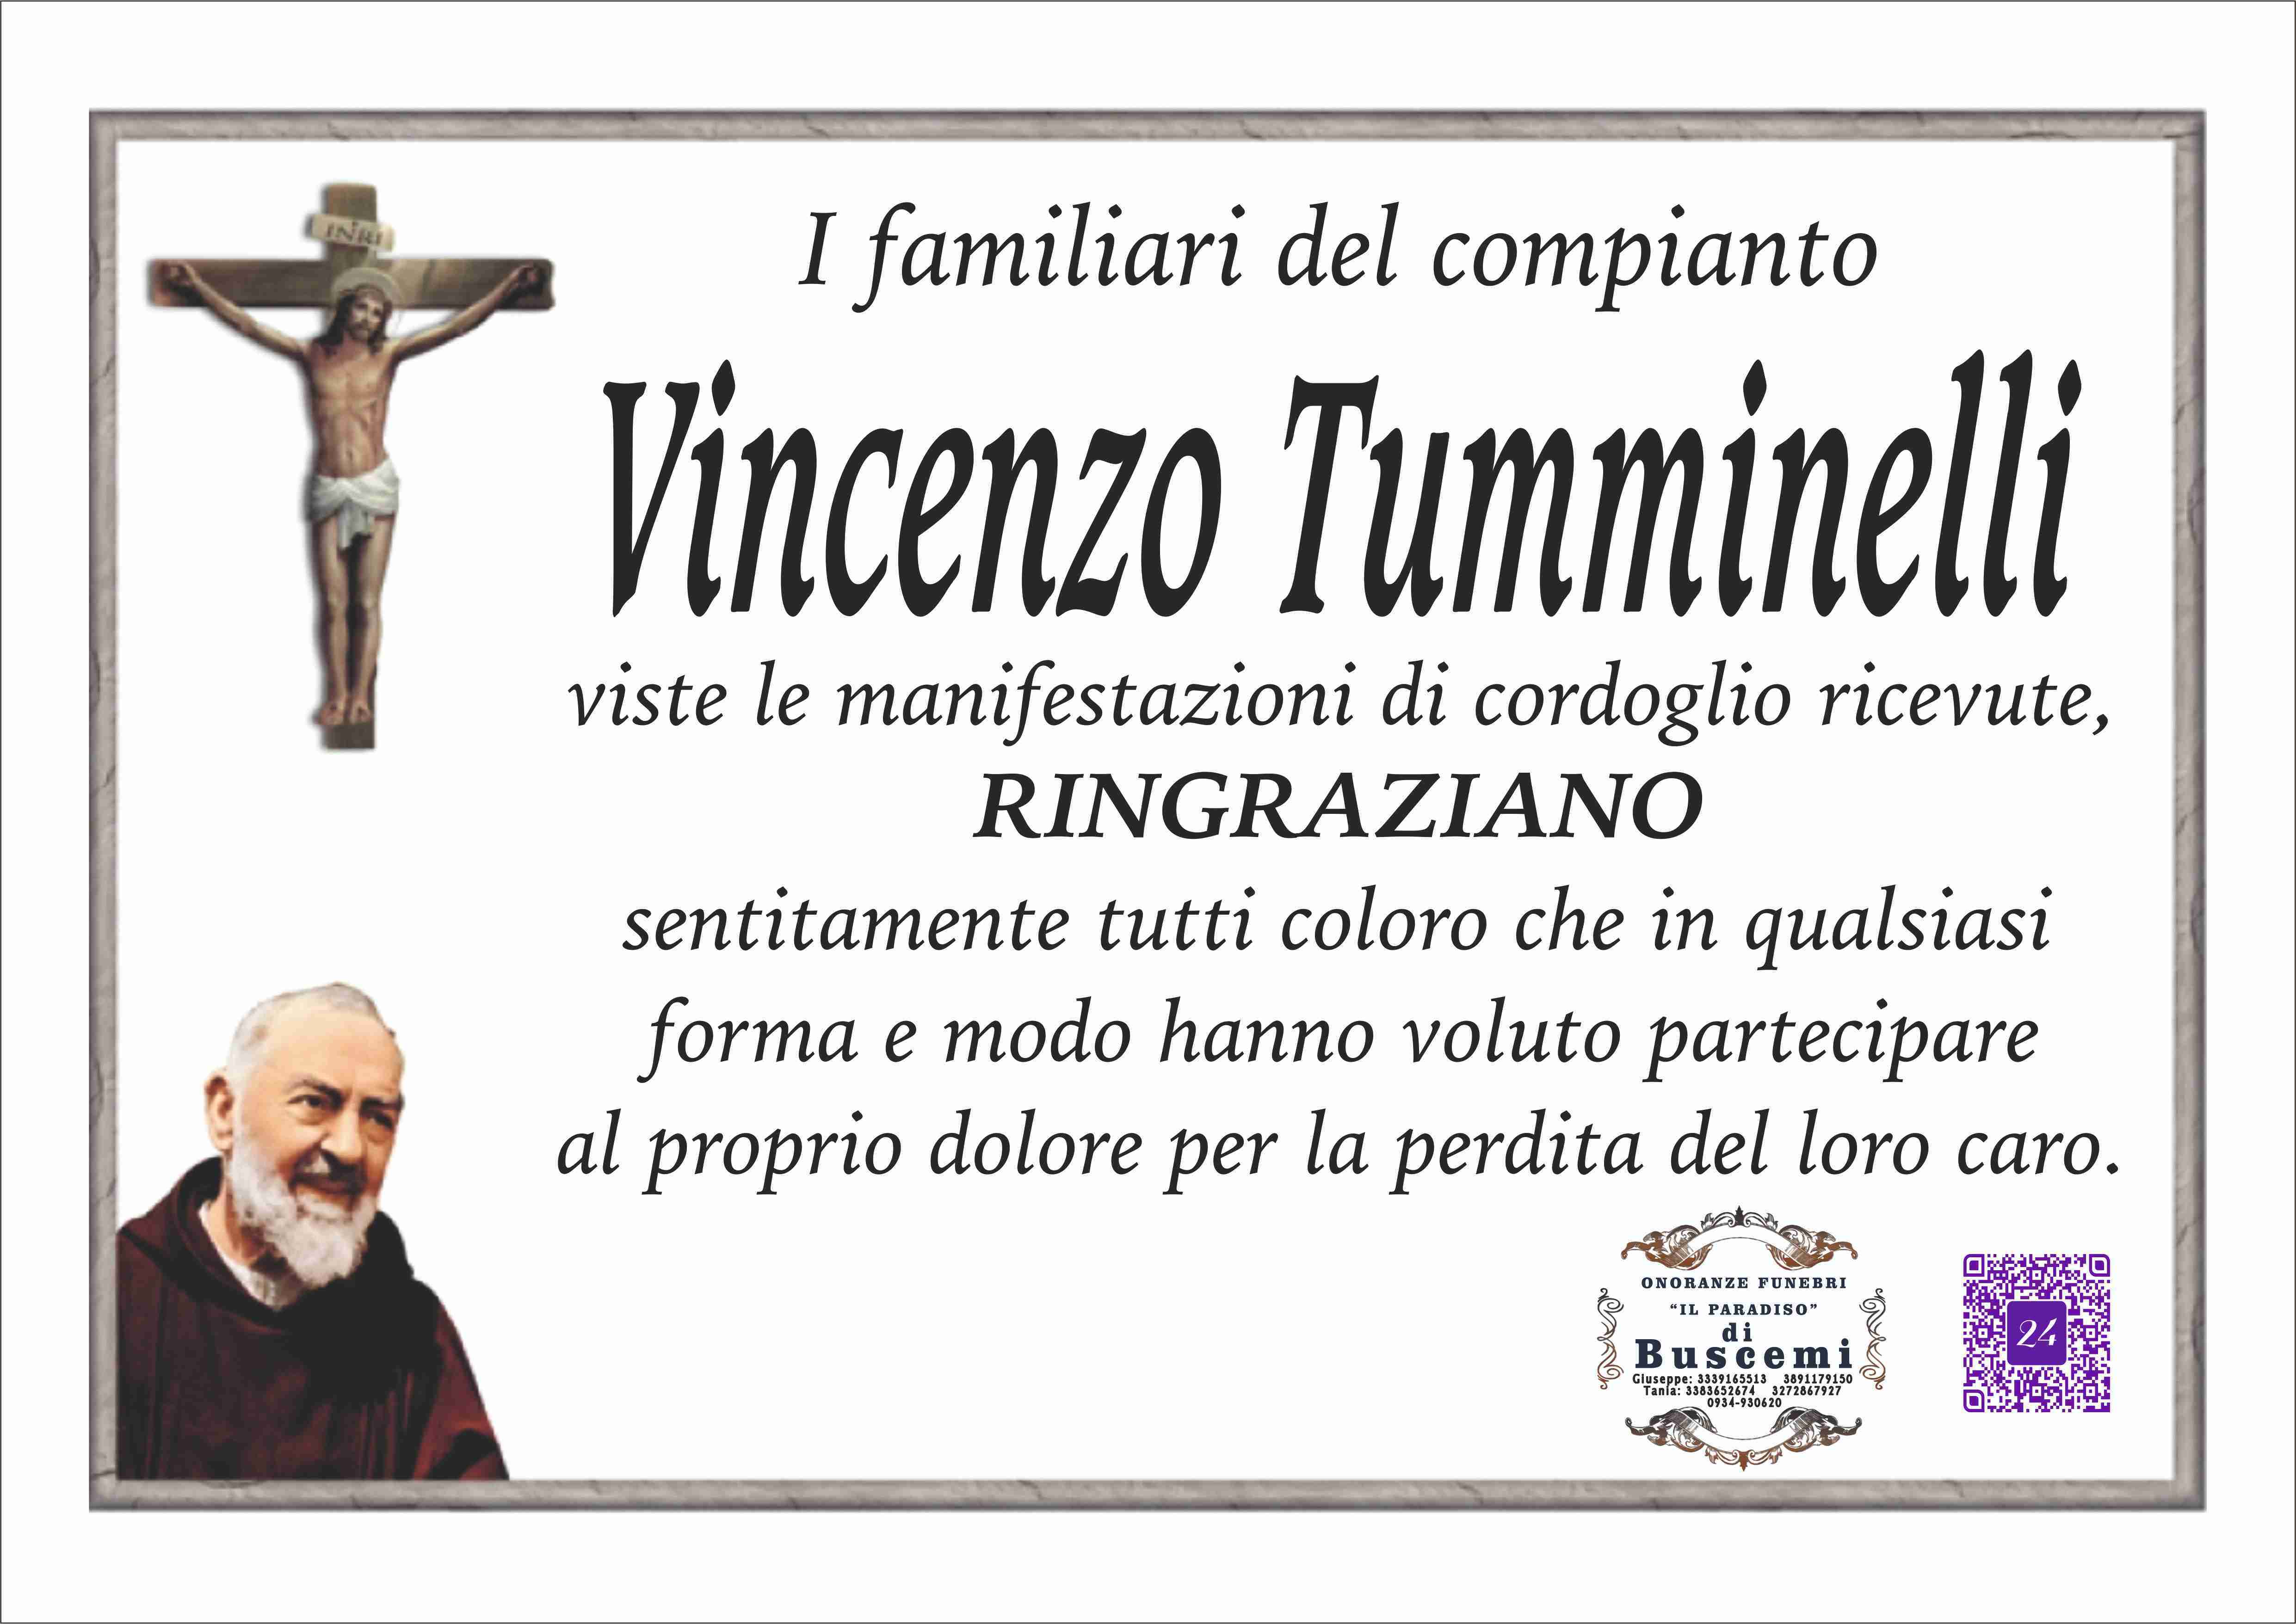 Vincenzo Tumminelli